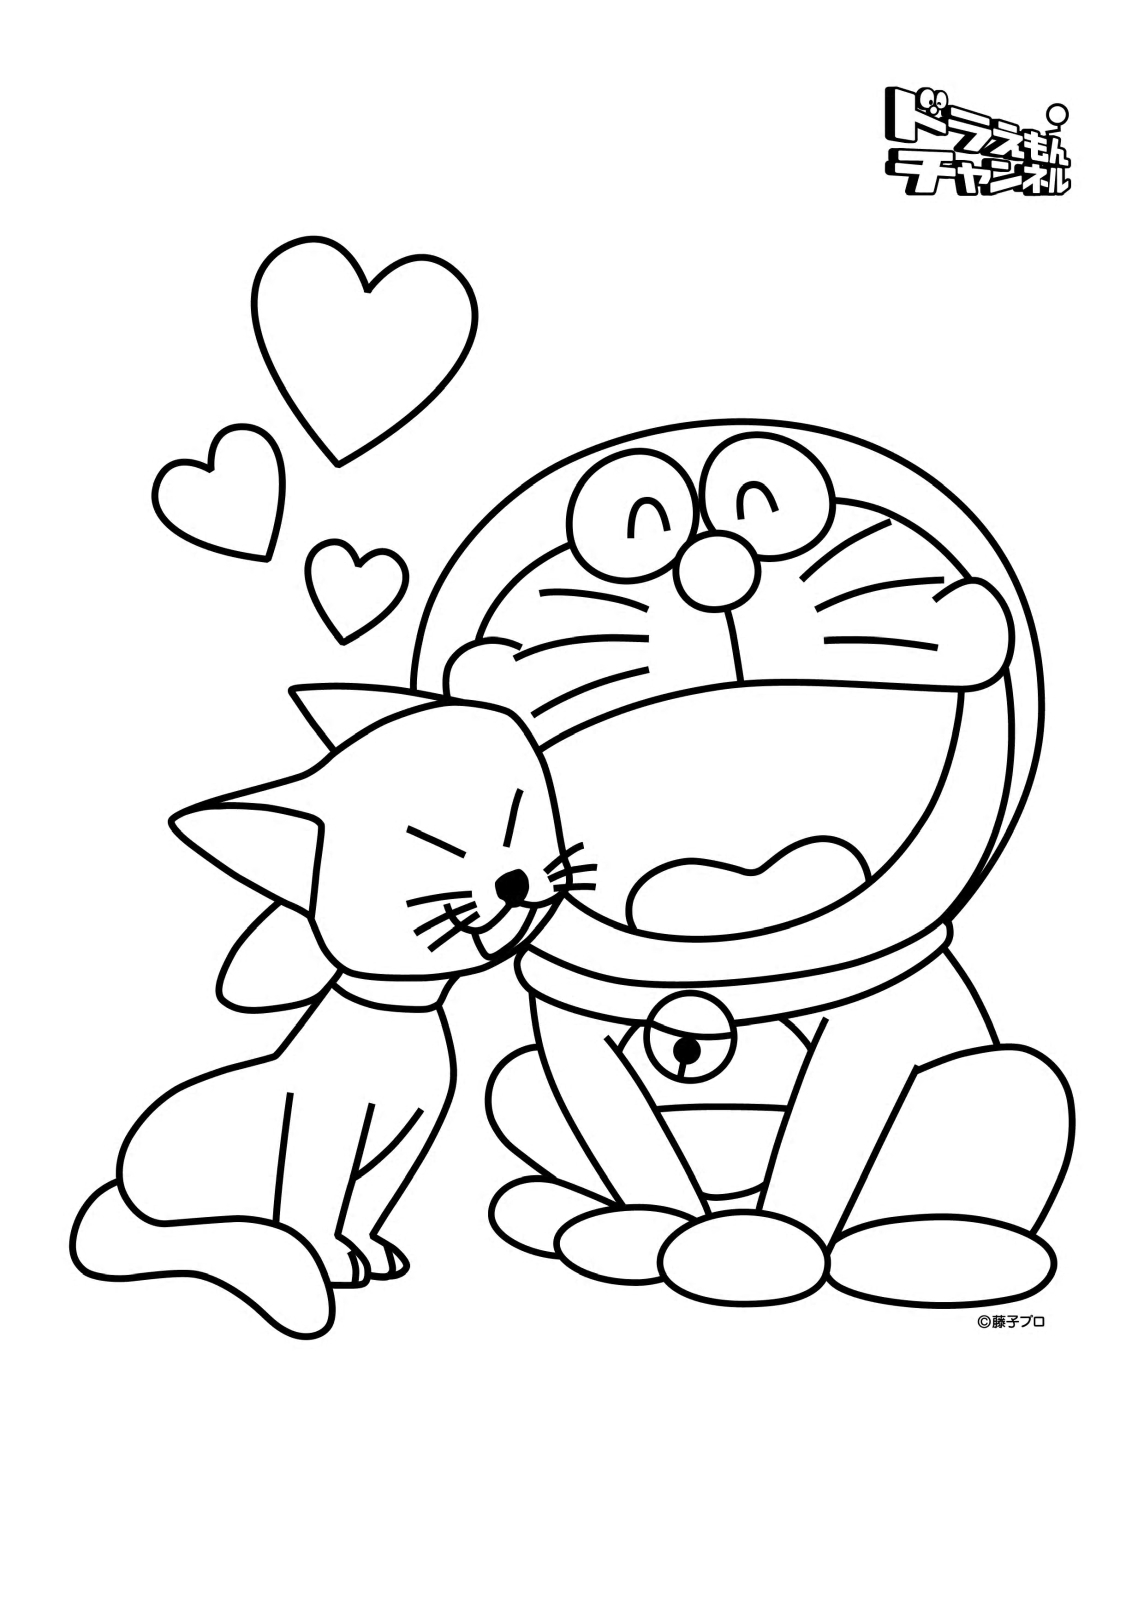 Doraemon et sa petite amie, Mimi de Doraemon